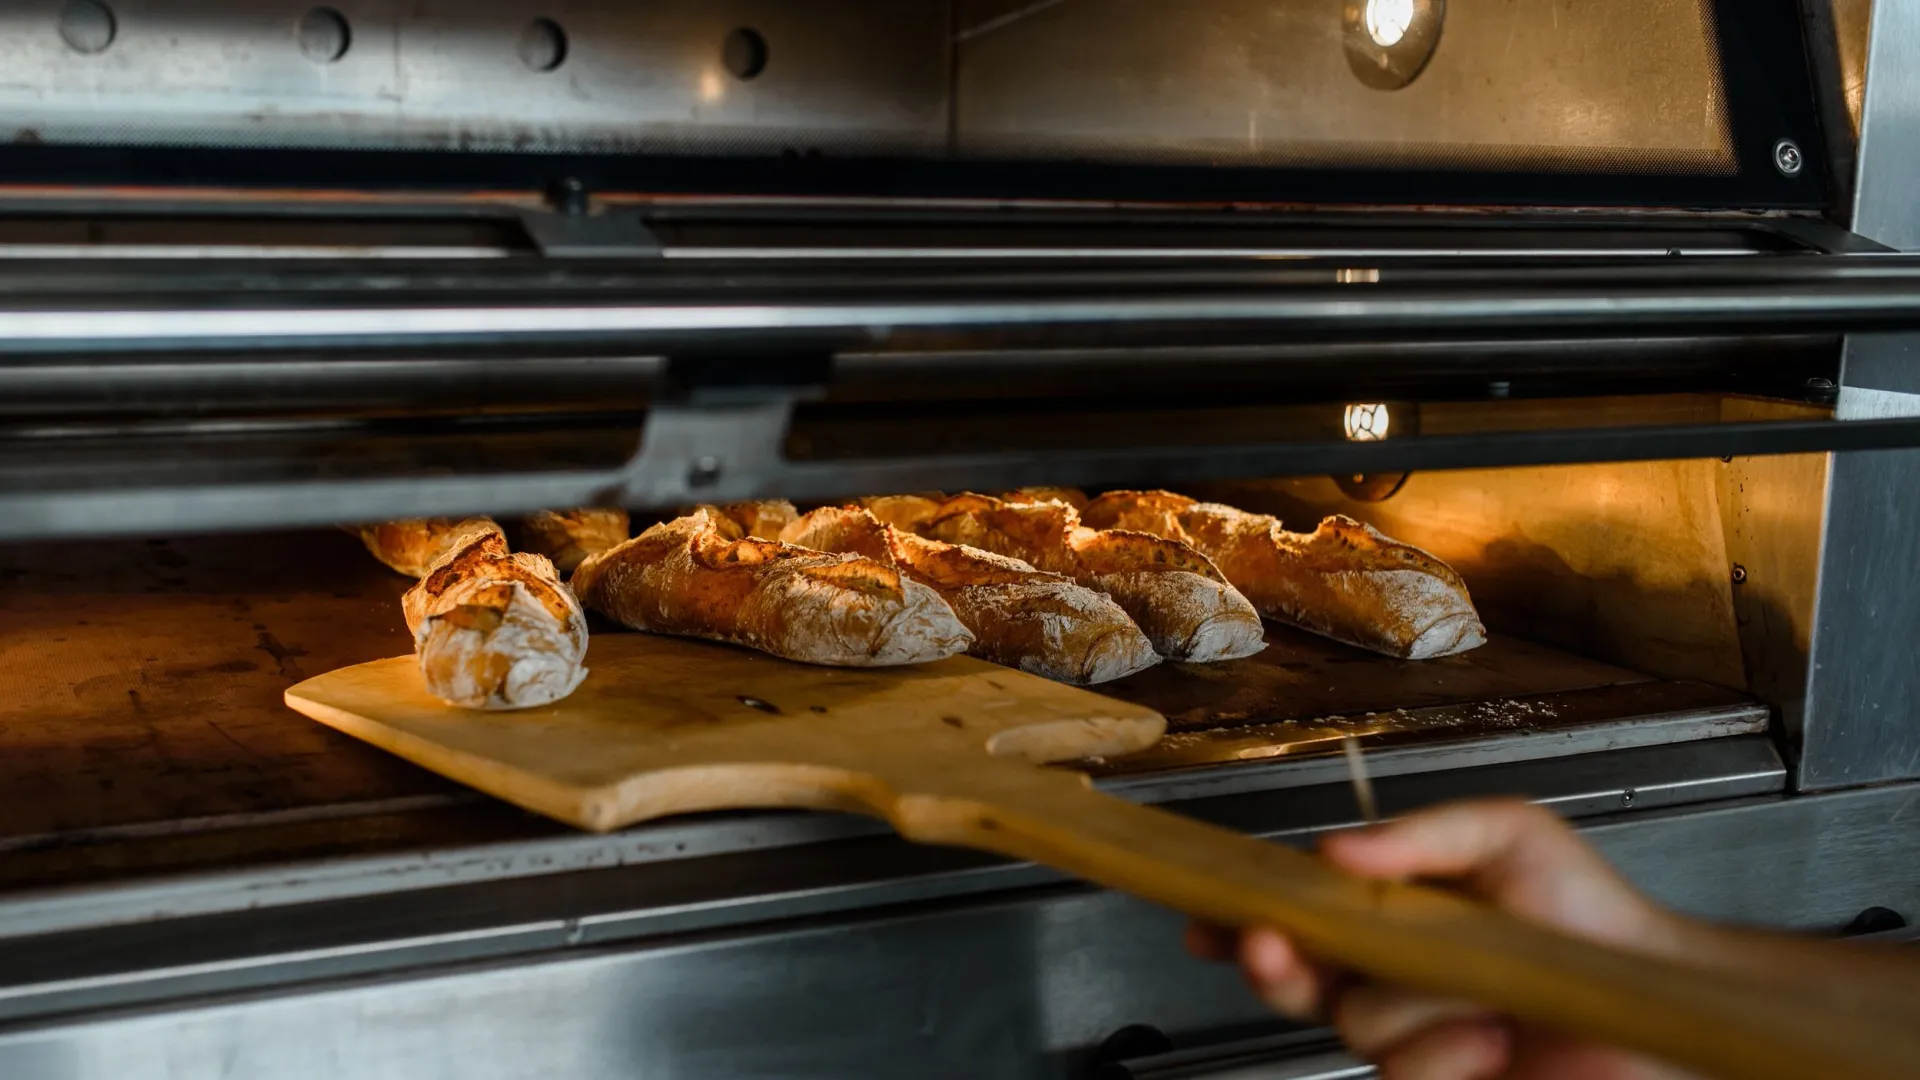 Принято было печь хлеб в форме сосулек. Фото: Med Photo Studio / Shutterstock / Fotodom